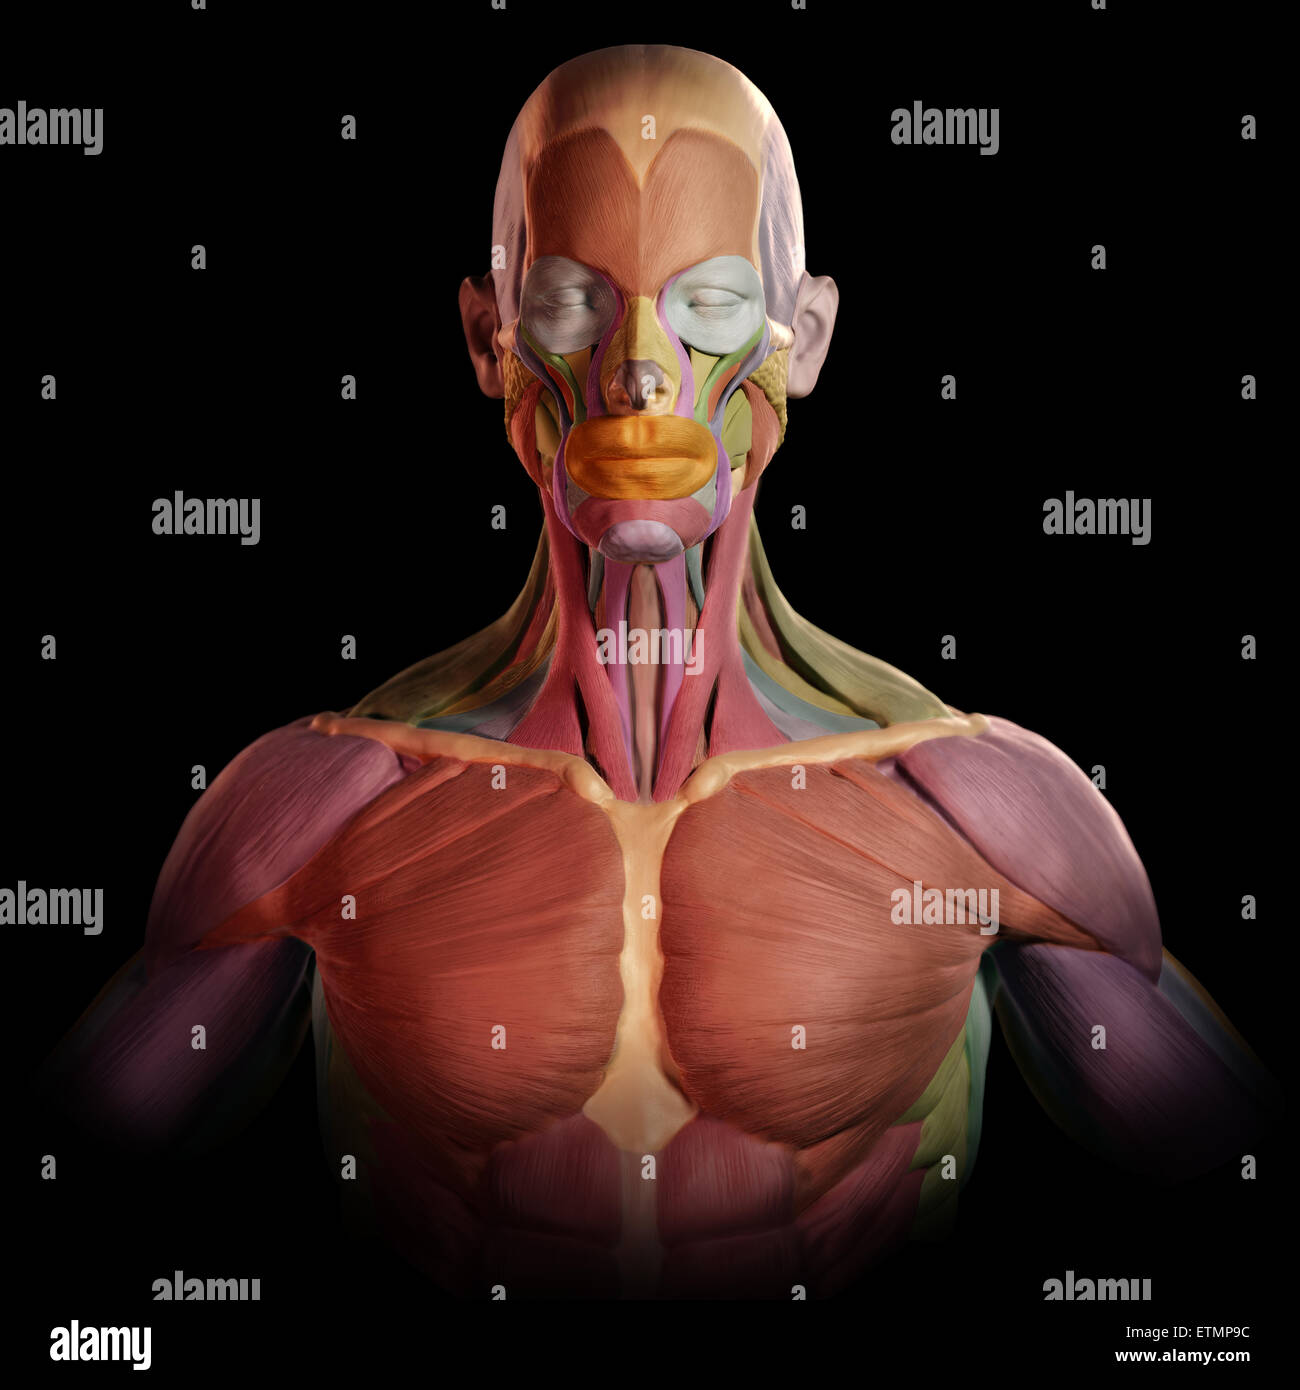 Imagen estilizada de los músculos de la cara y parte superior del cuerpo, al estilo de un modelo de arcilla con cada músculo codificadas por colores. Foto de stock